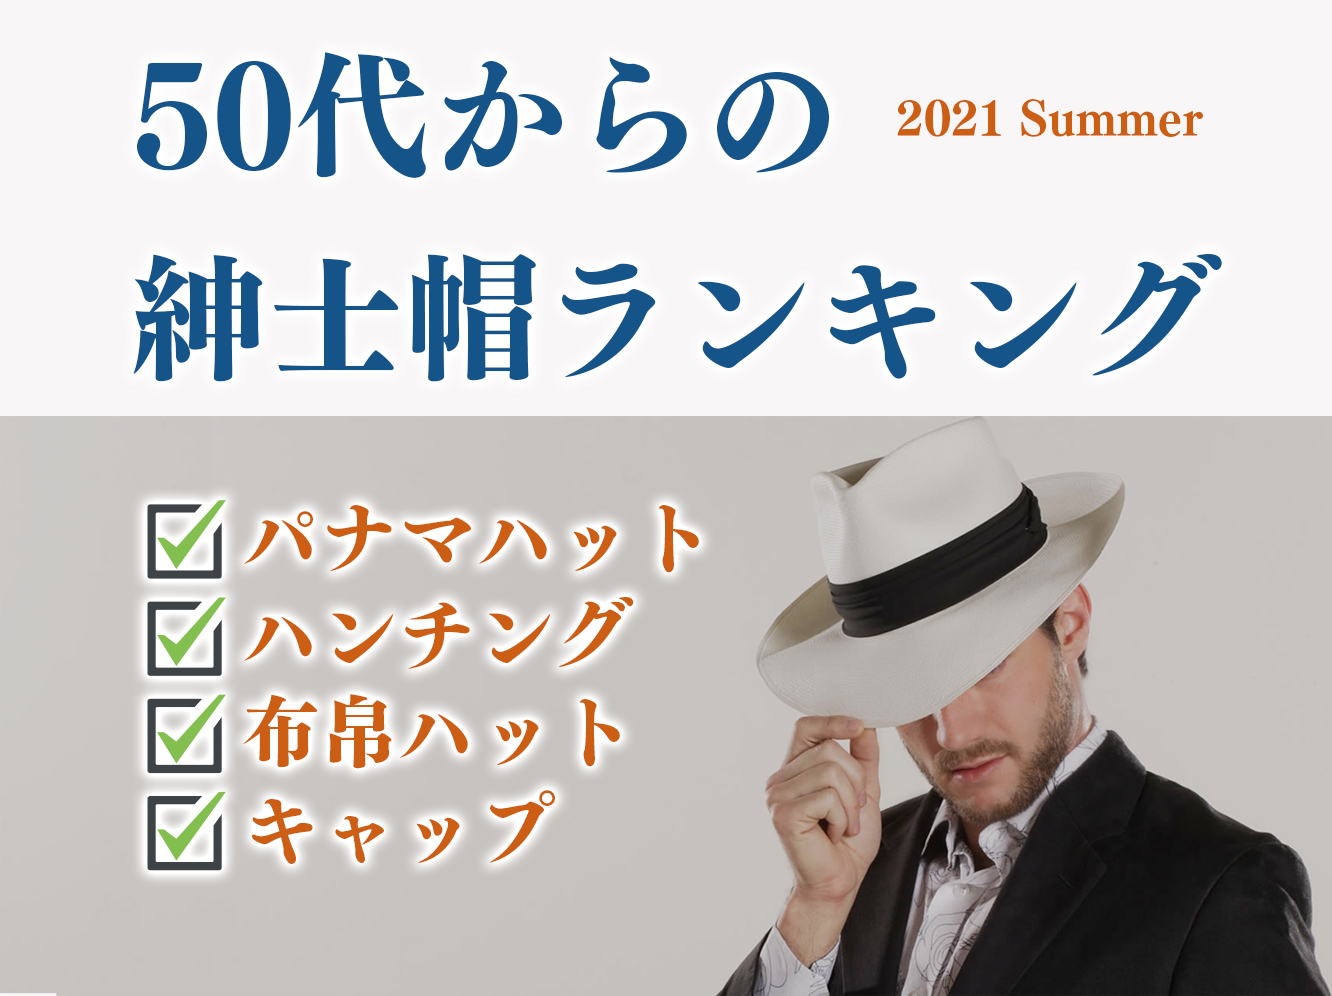 メンズ帽子選びの参考に 50代からの人気紳士帽ランキング 21年夏版 Dandy ダンディー